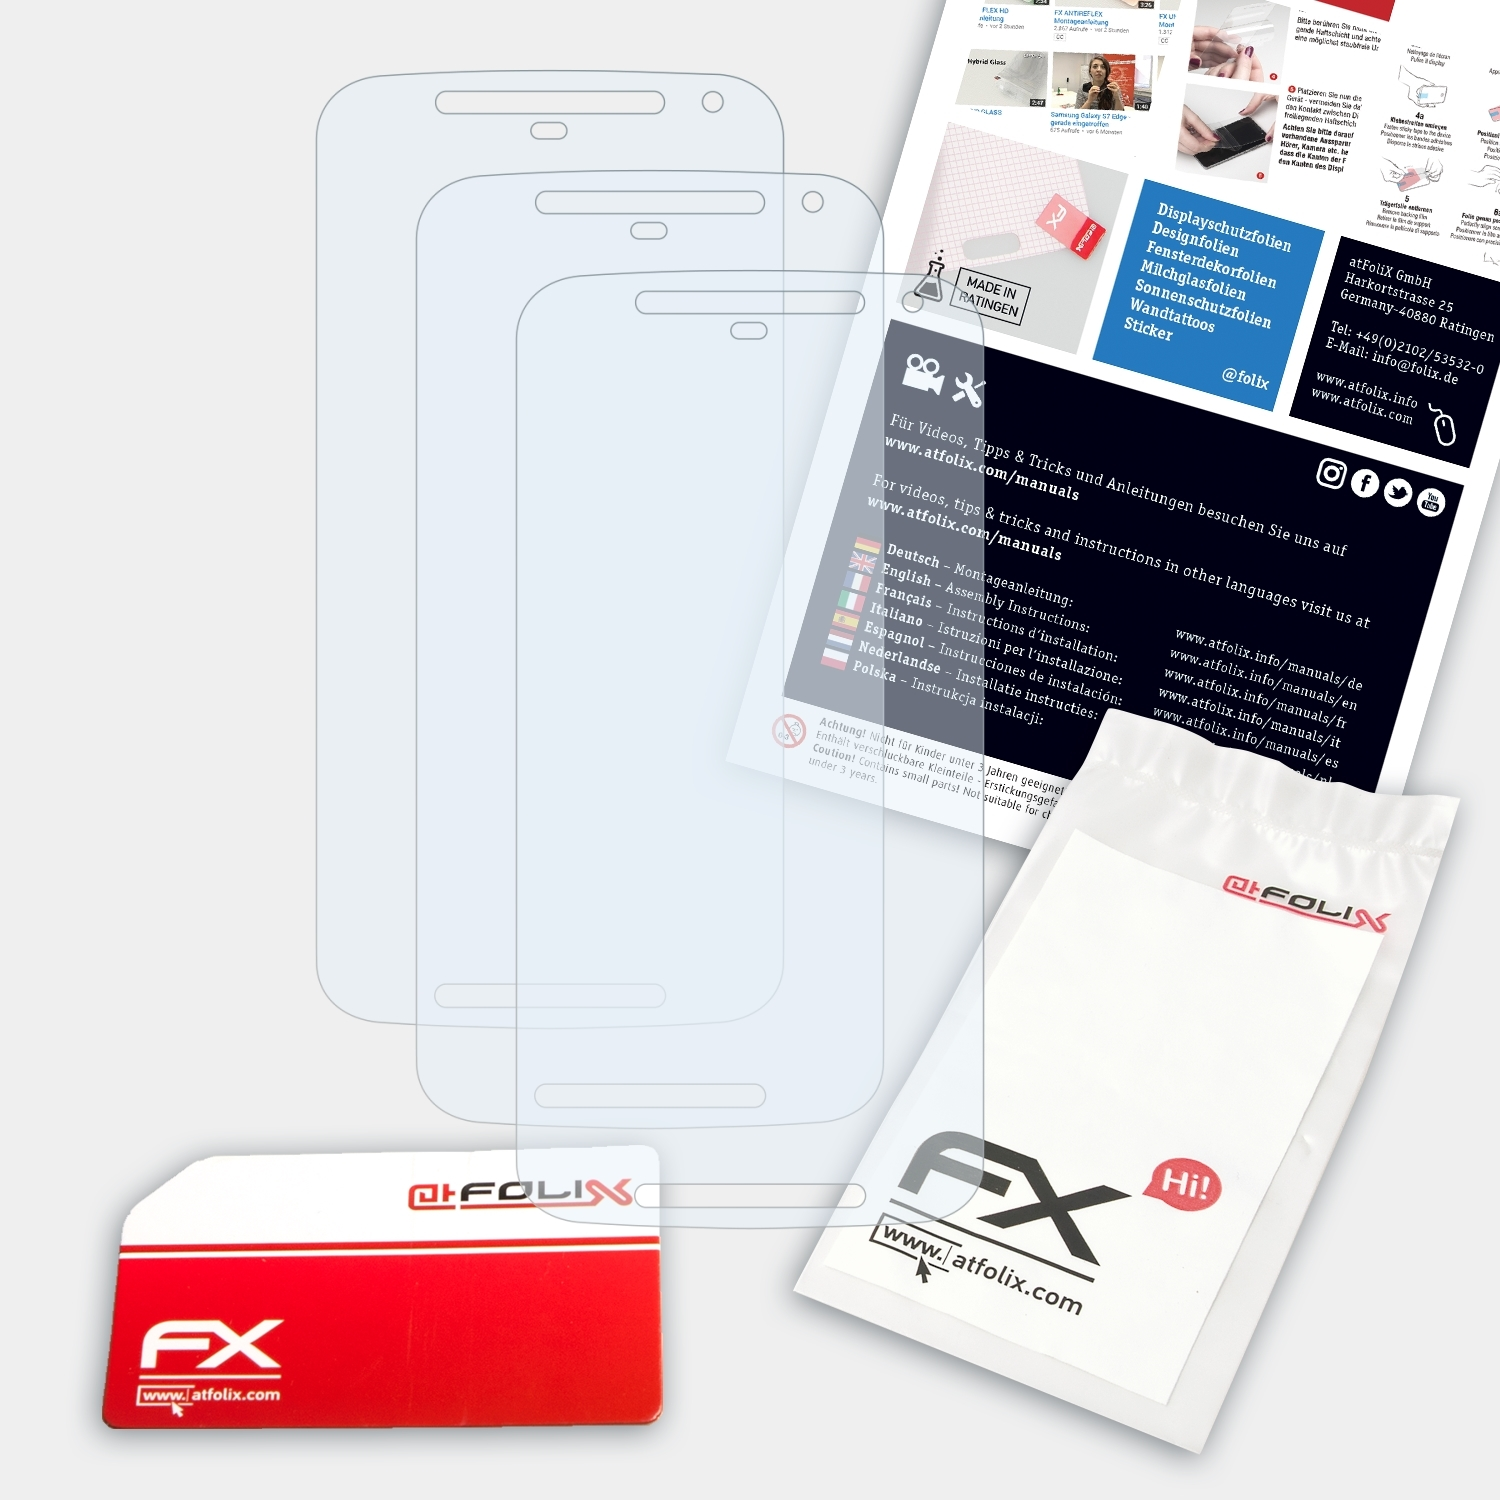 2014)) Displayschutz(für 3x FX-Clear Generation (2. G Moto ATFOLIX Motorola